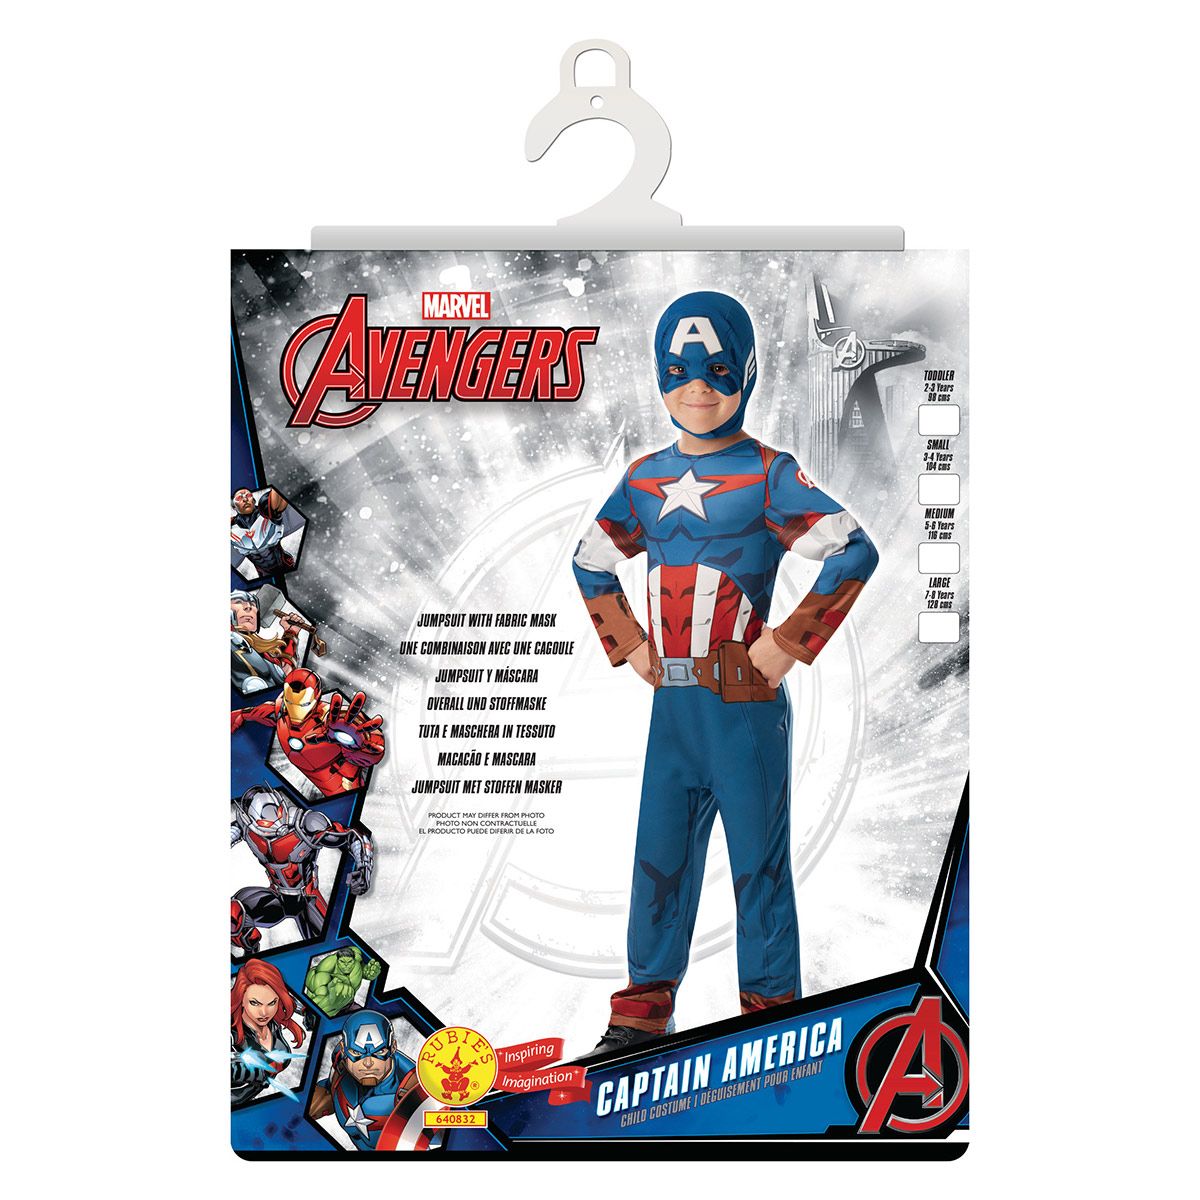 6 sacs anniversaire Avengers Marvel - La magie du déguisement